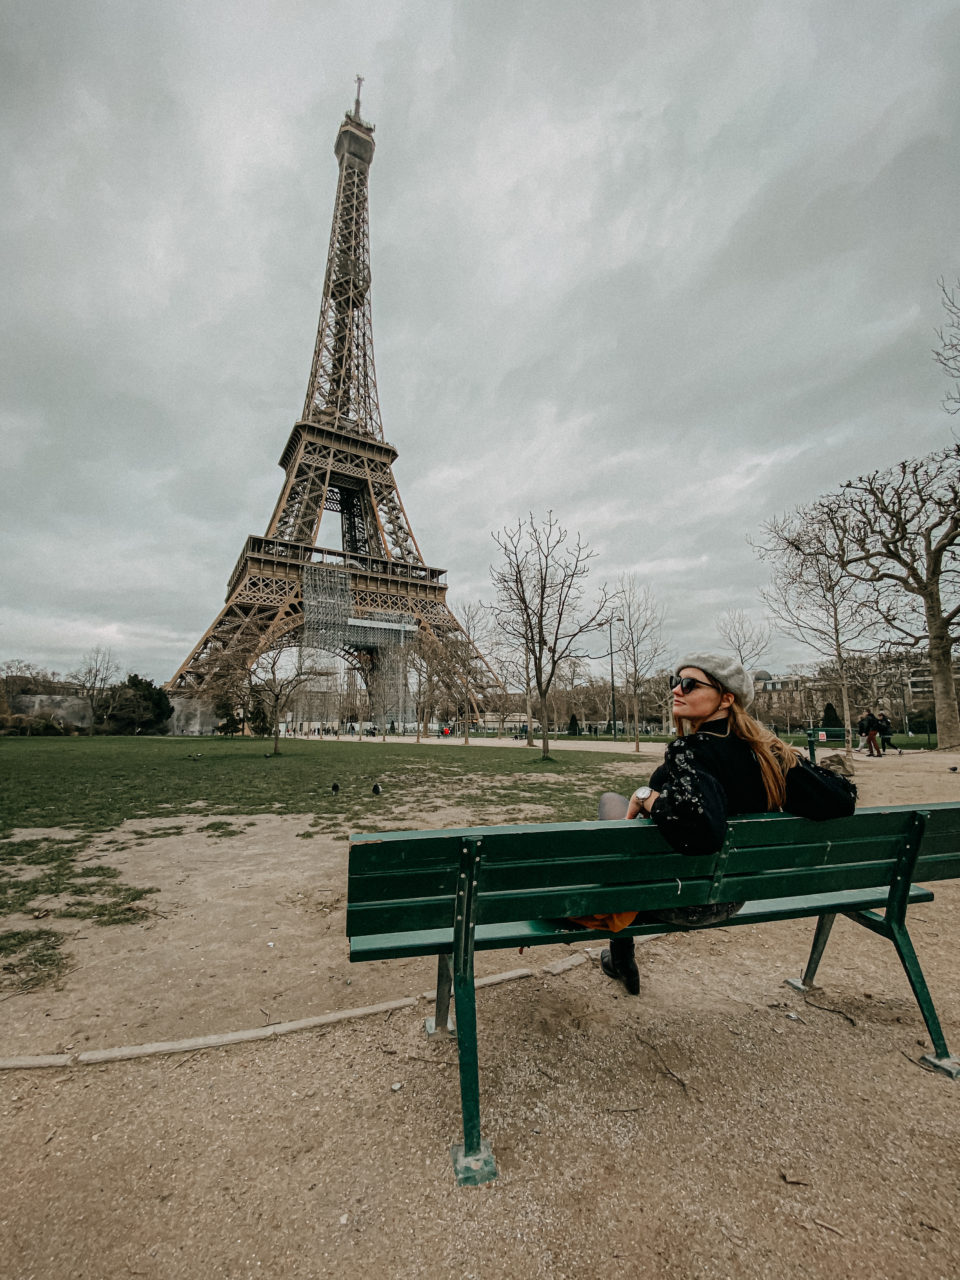 Frau auf einer Bank in Paris in der nähe des Eiffelturms